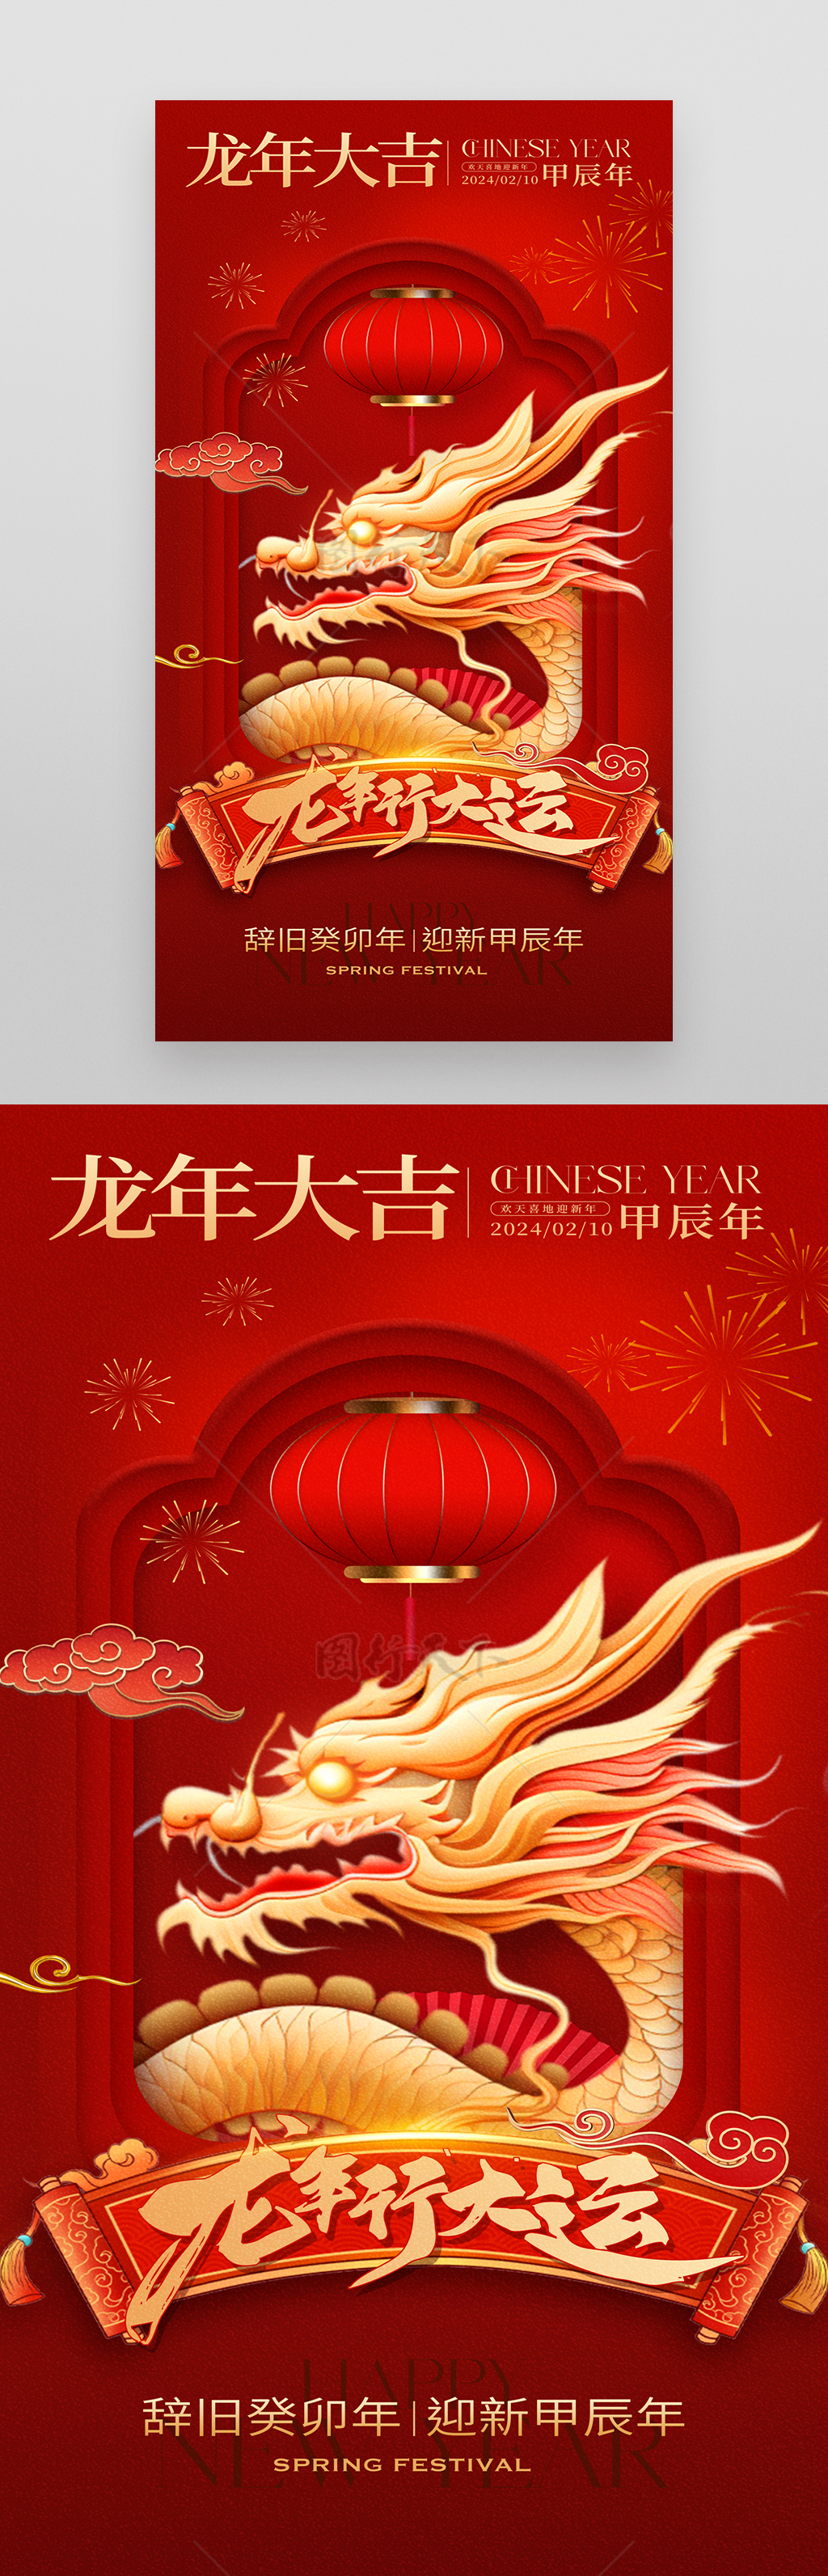 龙年大吉春节新年海报